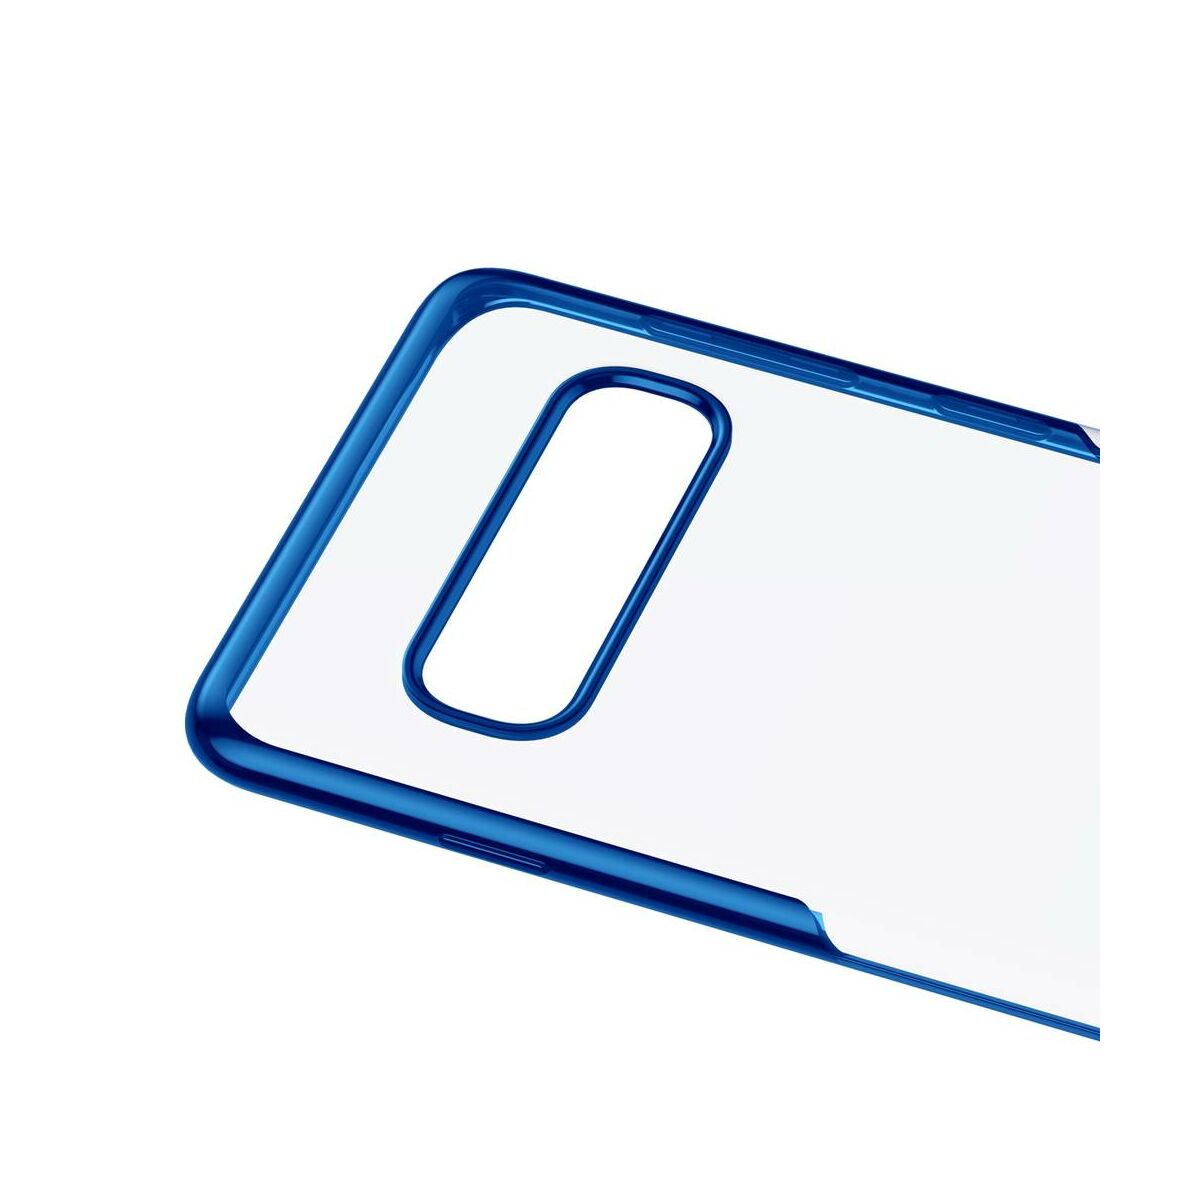 Baseus Samsung S10 Plus tok, Simple, kék (ARSAS10P-MD03)